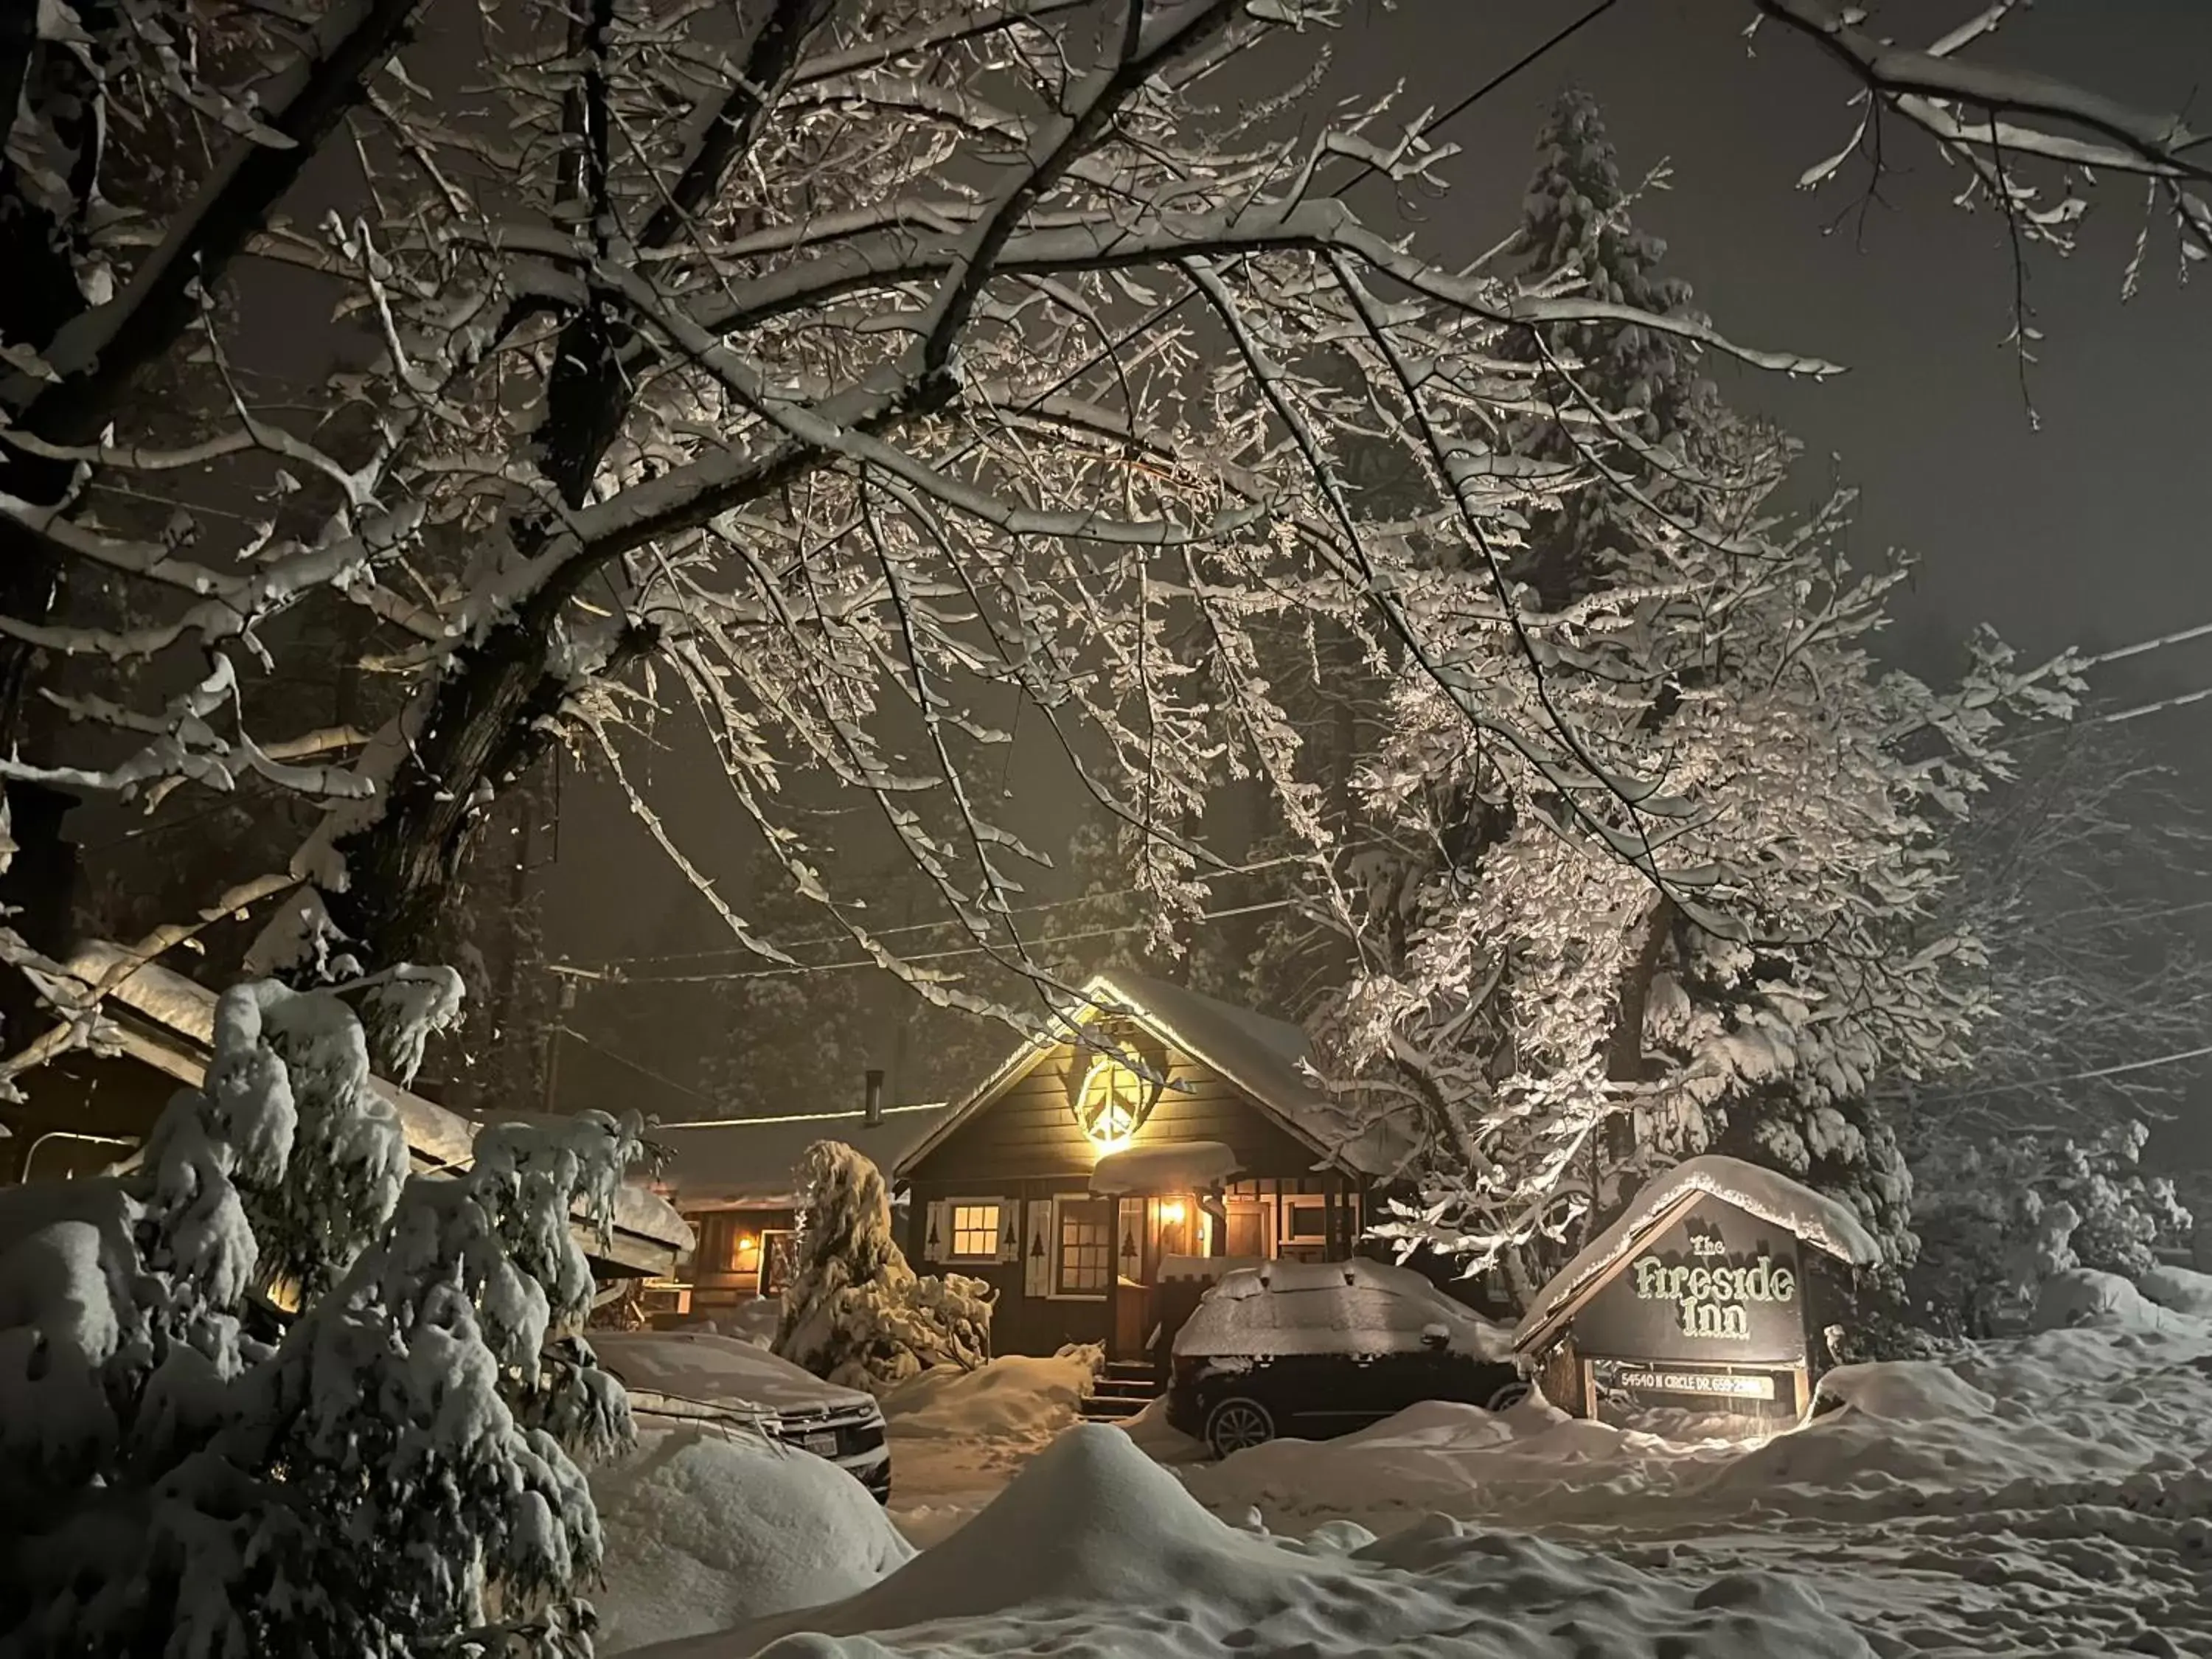 Winter in The Fireside Inn